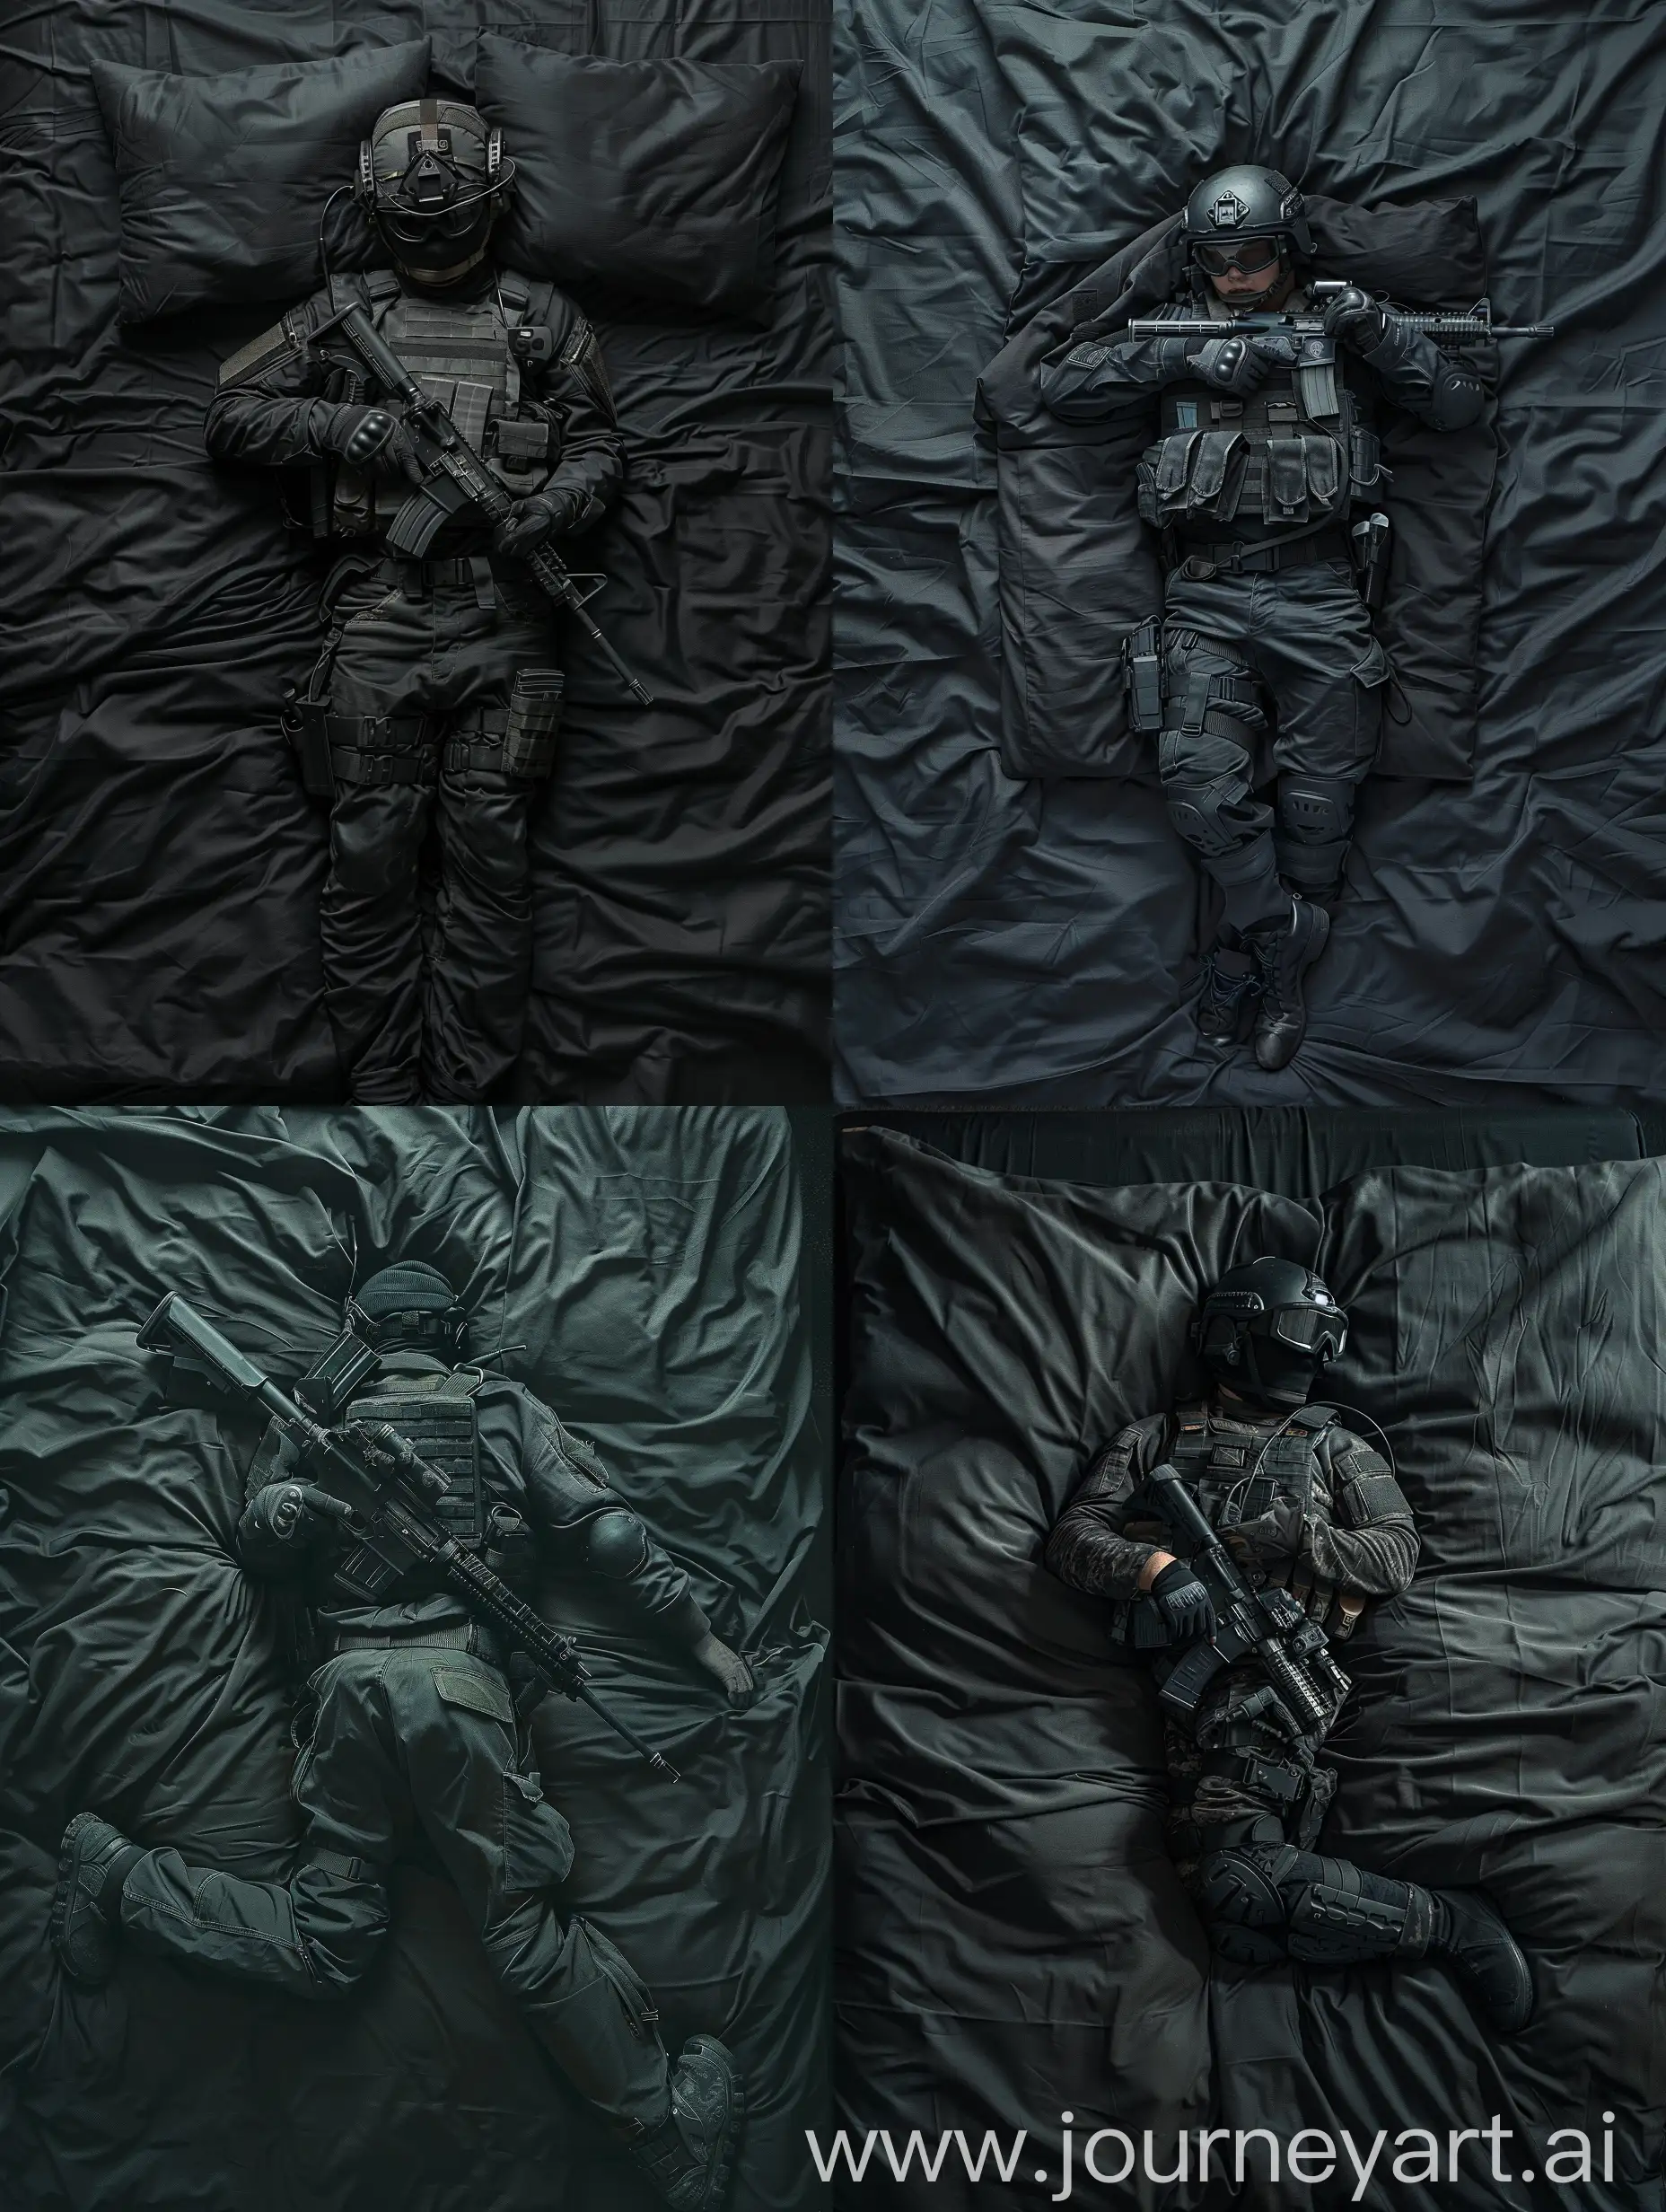 Оперативник SWAT лежащий на чёрной кровати, в балакаве, с оружием, вид сверху